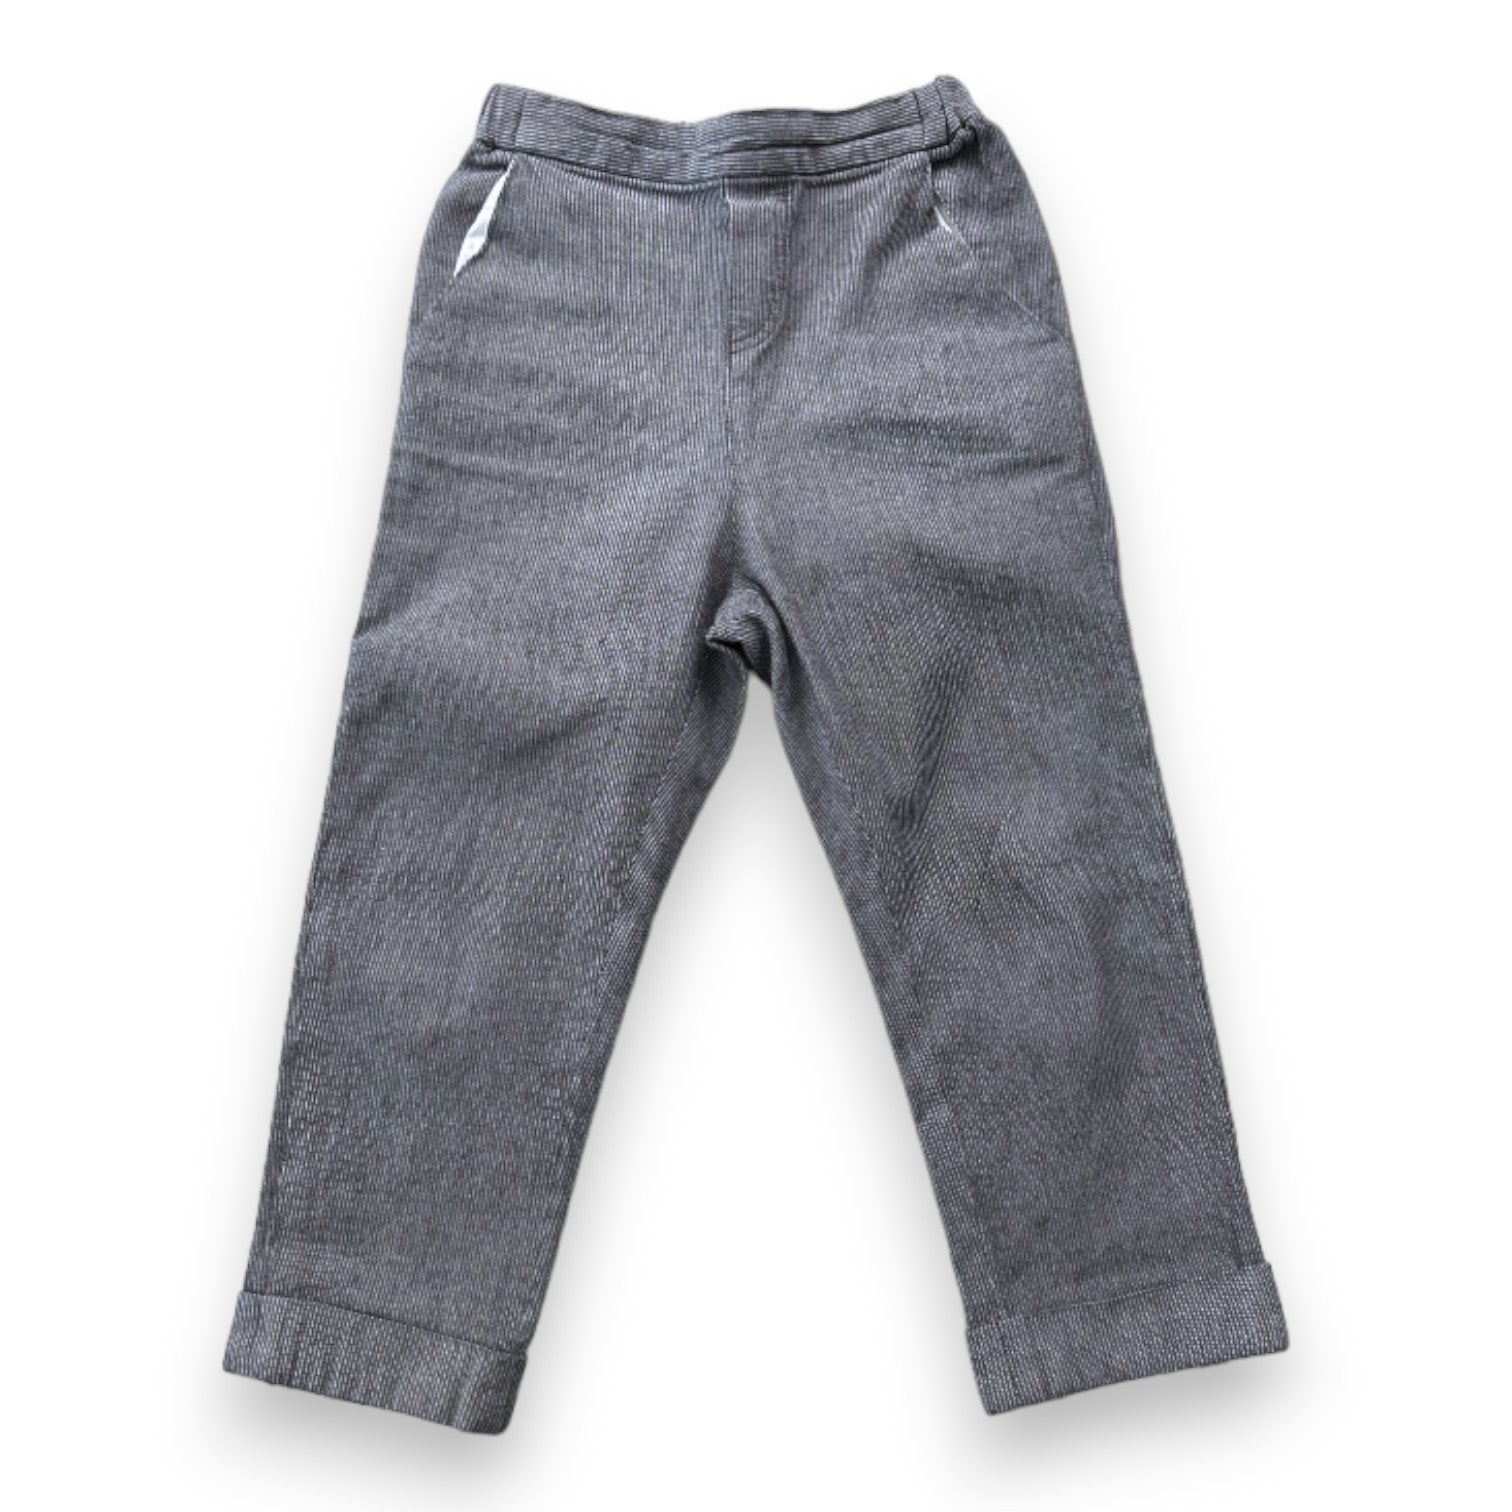 BONPOINT - pantalon gris cintré - 4 ans